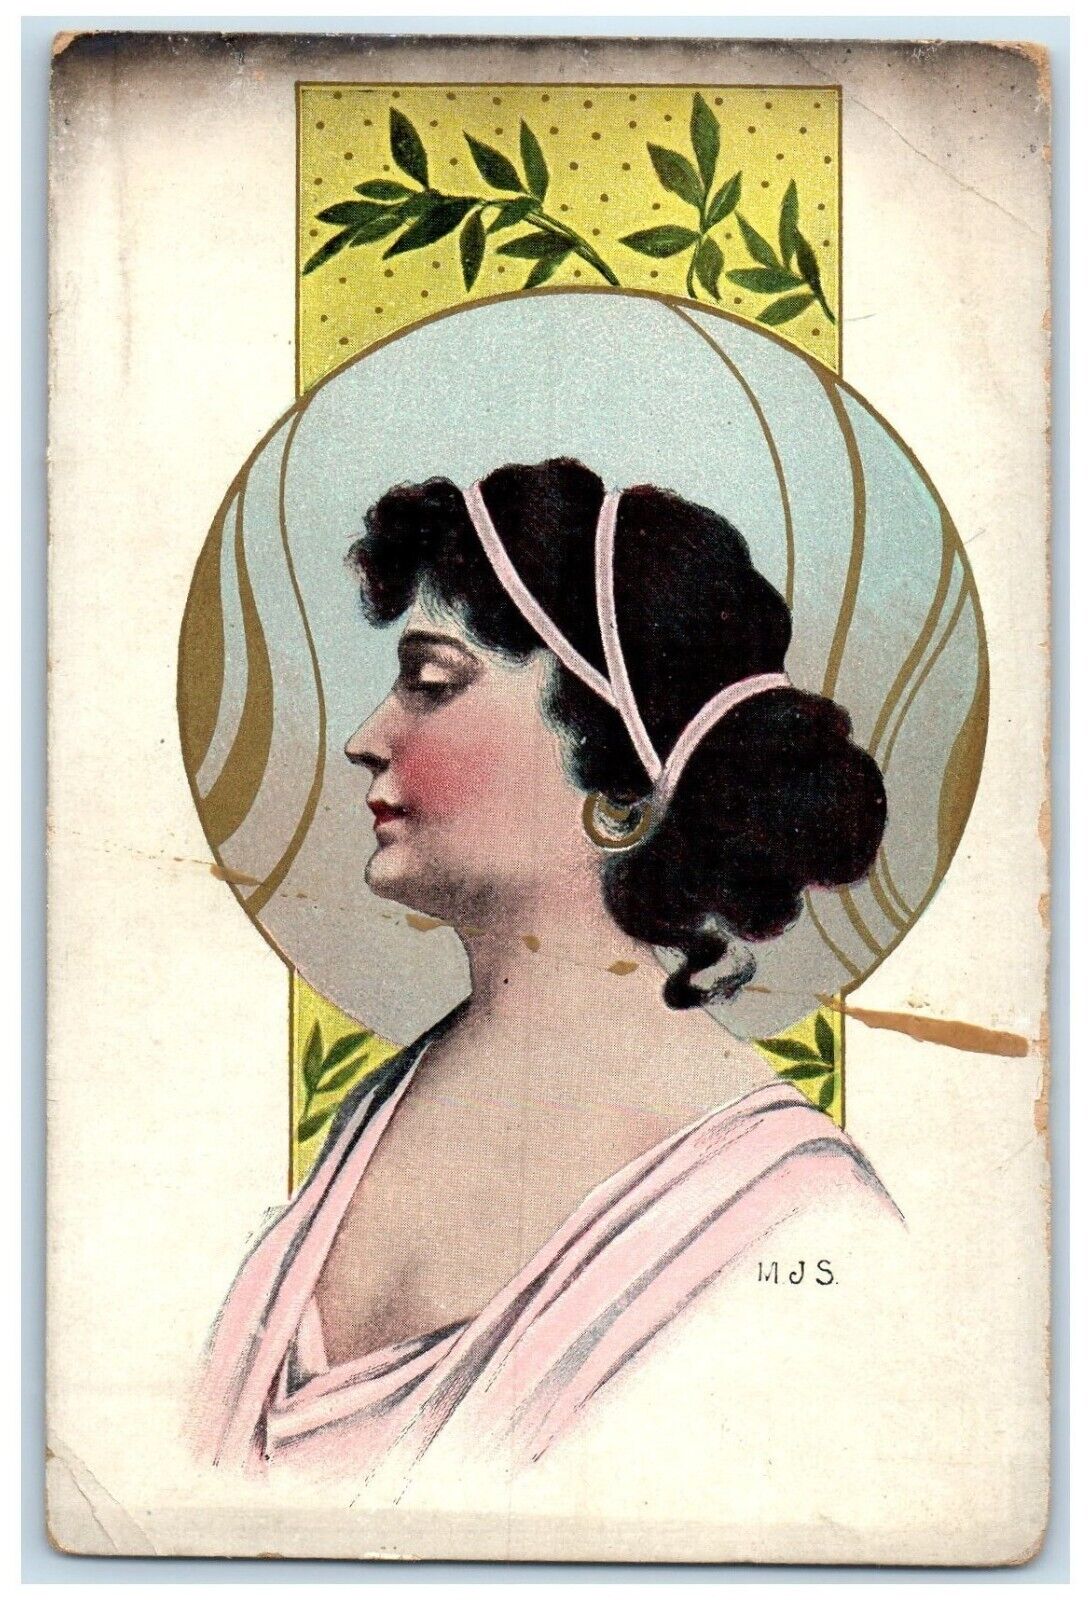 c1905 Pretty Woman Curly Hair Black Art Nouveau Unposted Antique Postcard